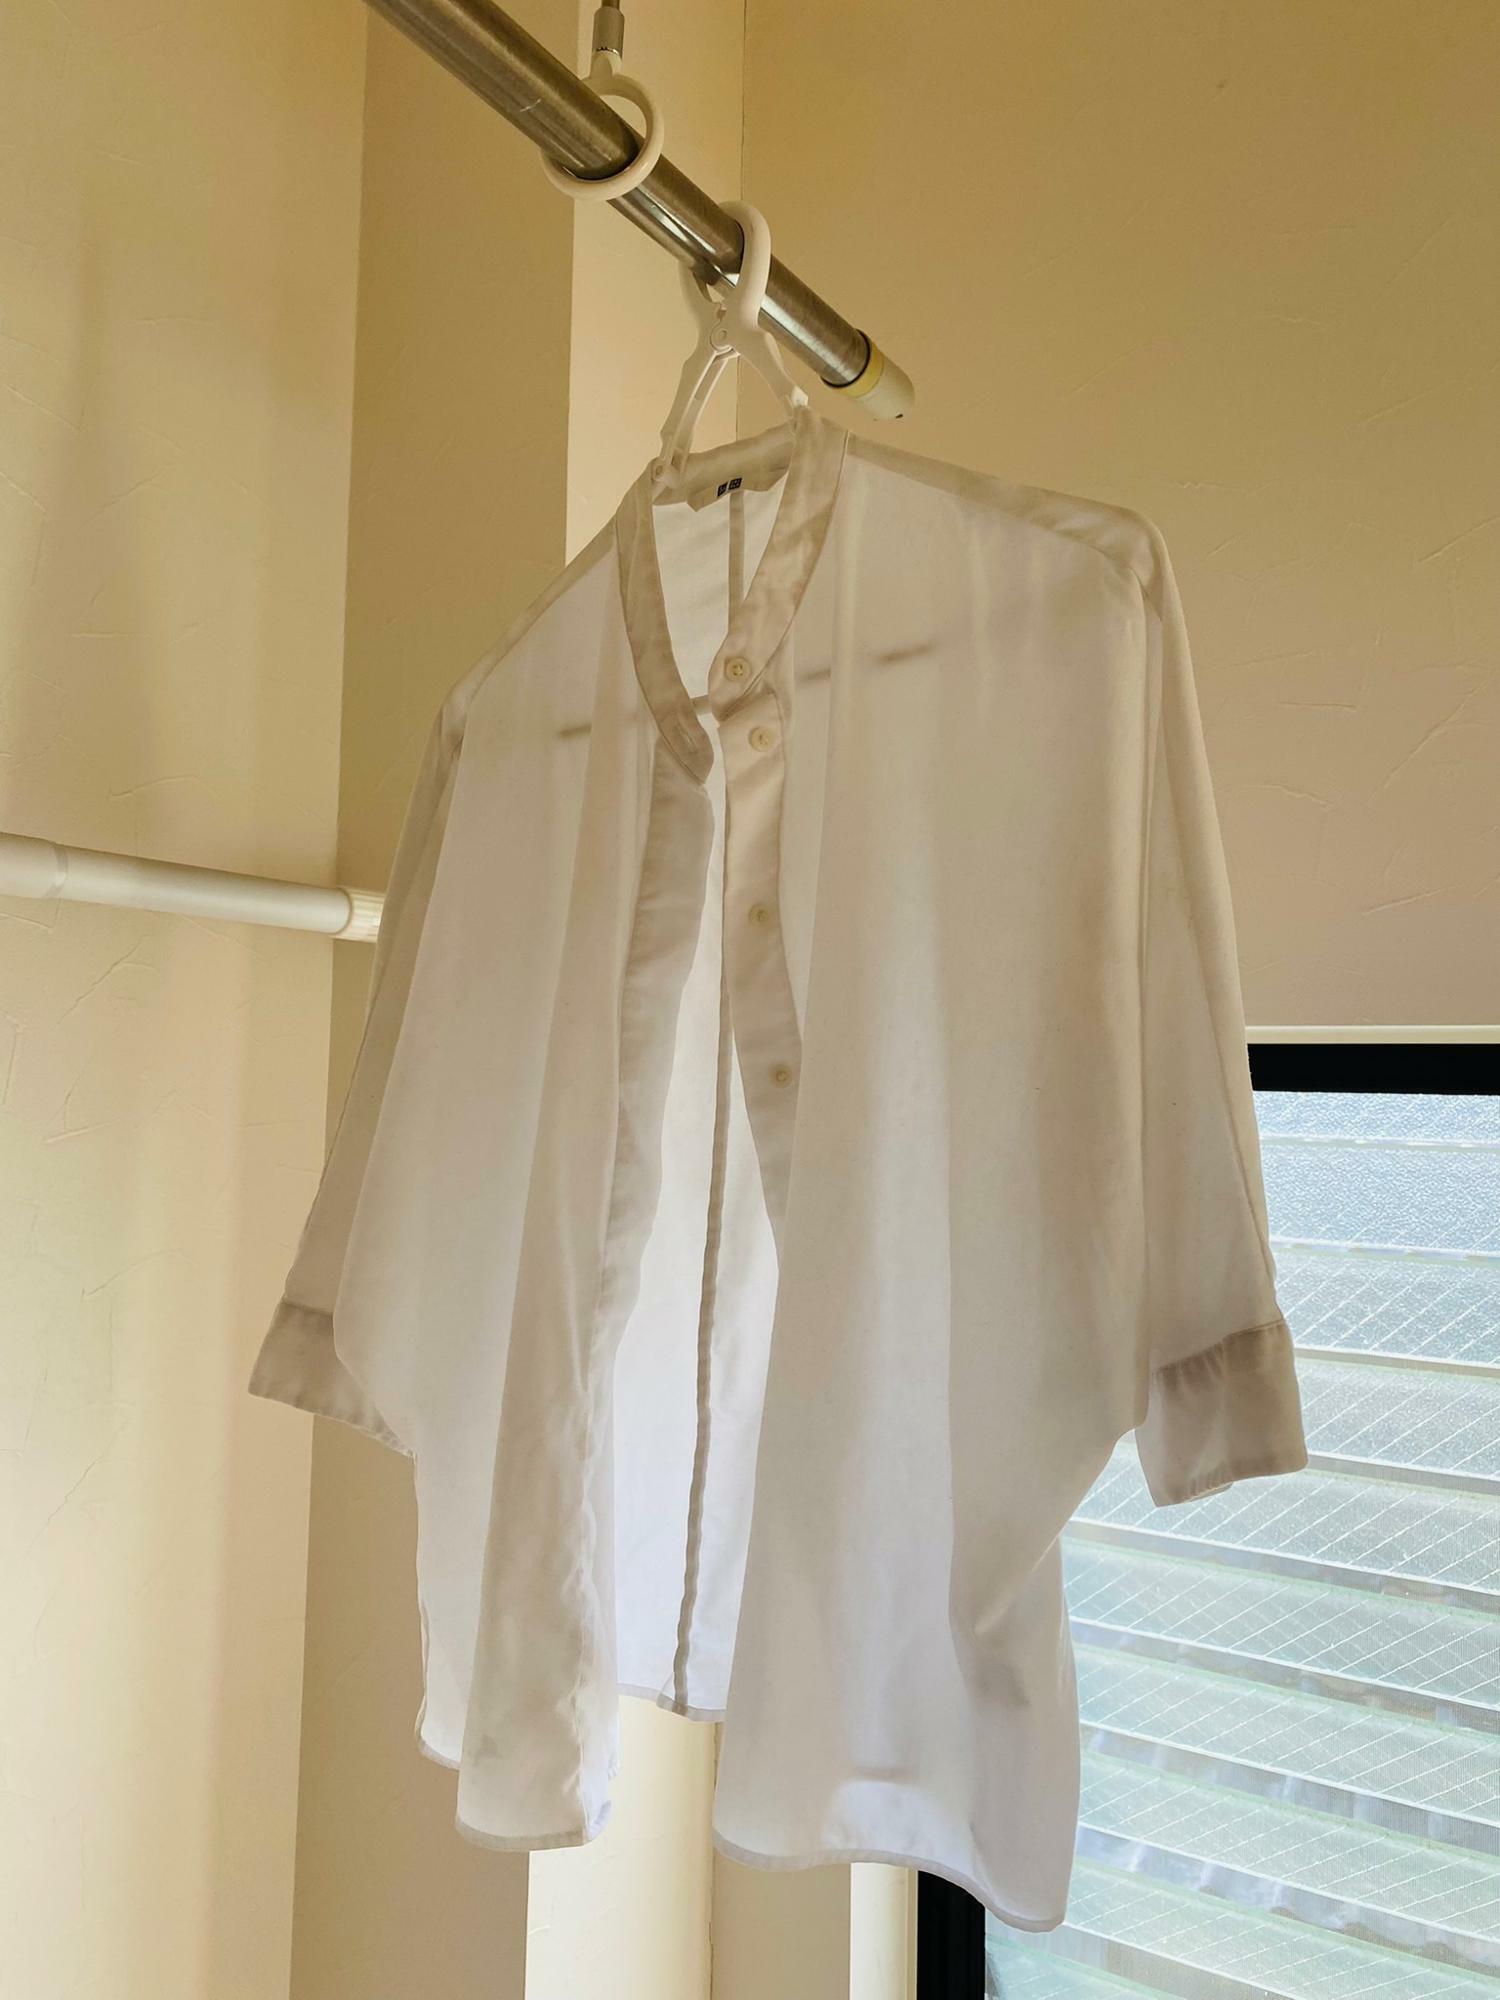 脱水1分設定後のシャツはビチョビチョではなくちょっと湿ってるなという程度。